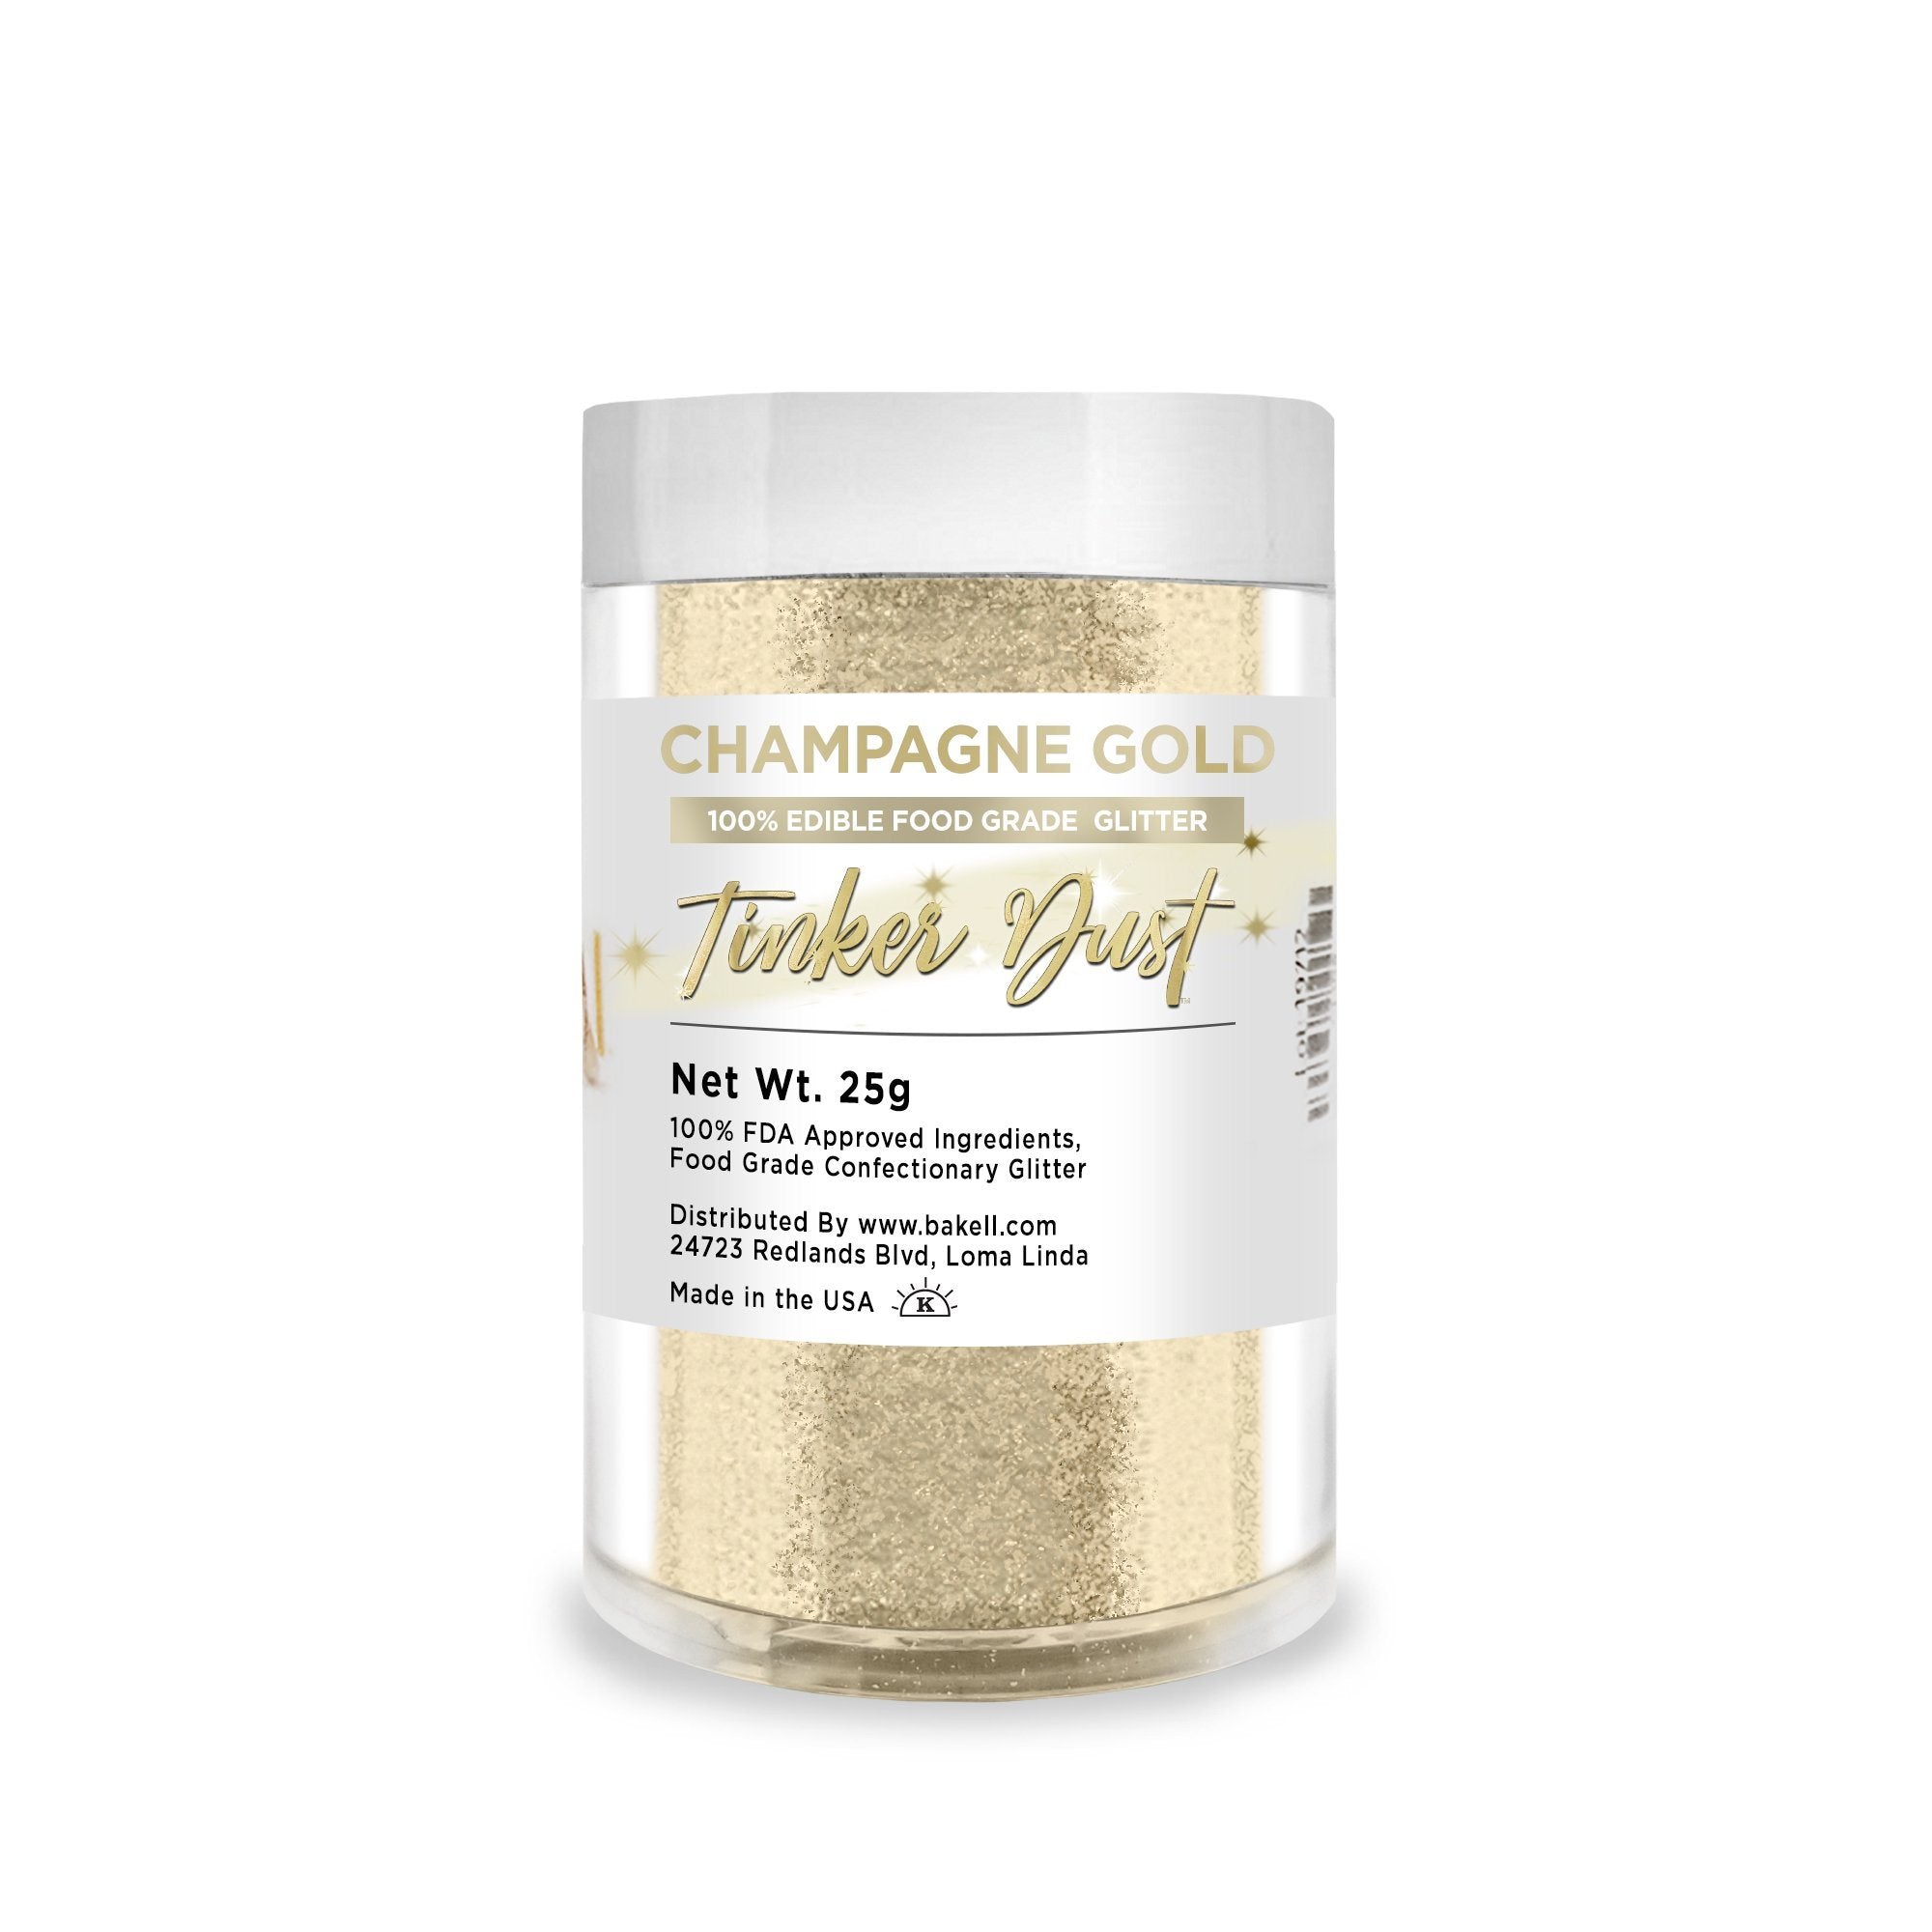 Bakell Bright Gold Edible Glitter, 25 Grams | Tinker Dust Edible